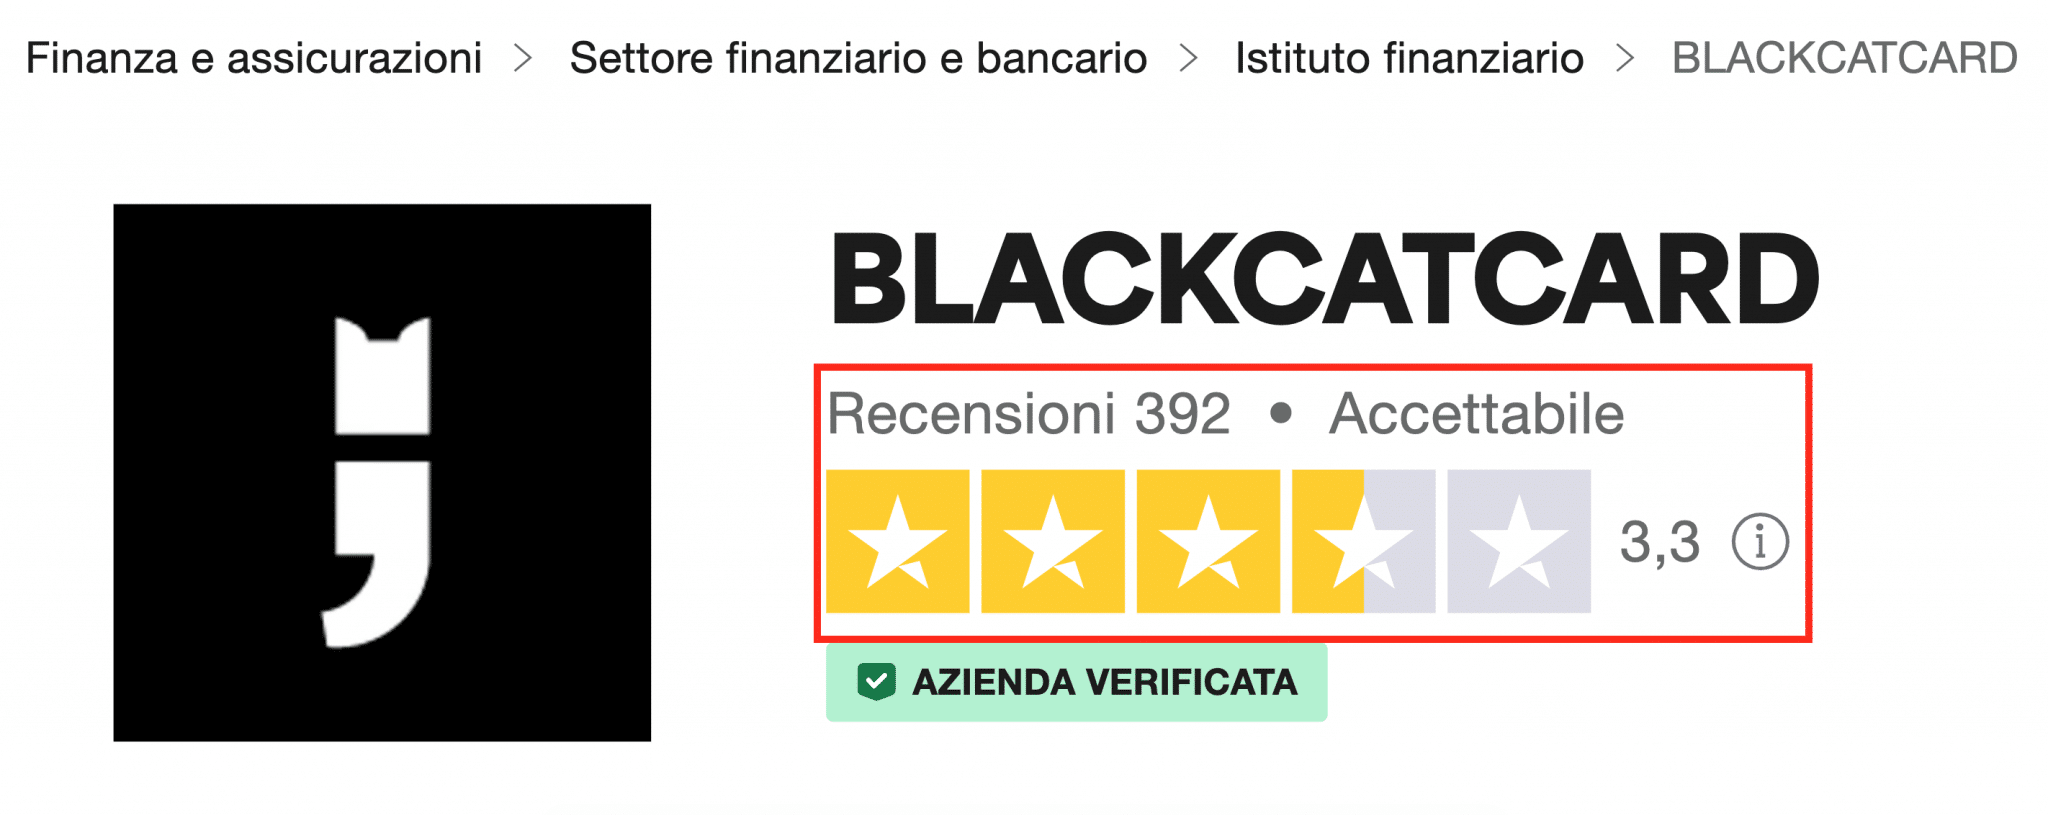 Gli utenti valutano accettabile il servizio di Blackcatcard